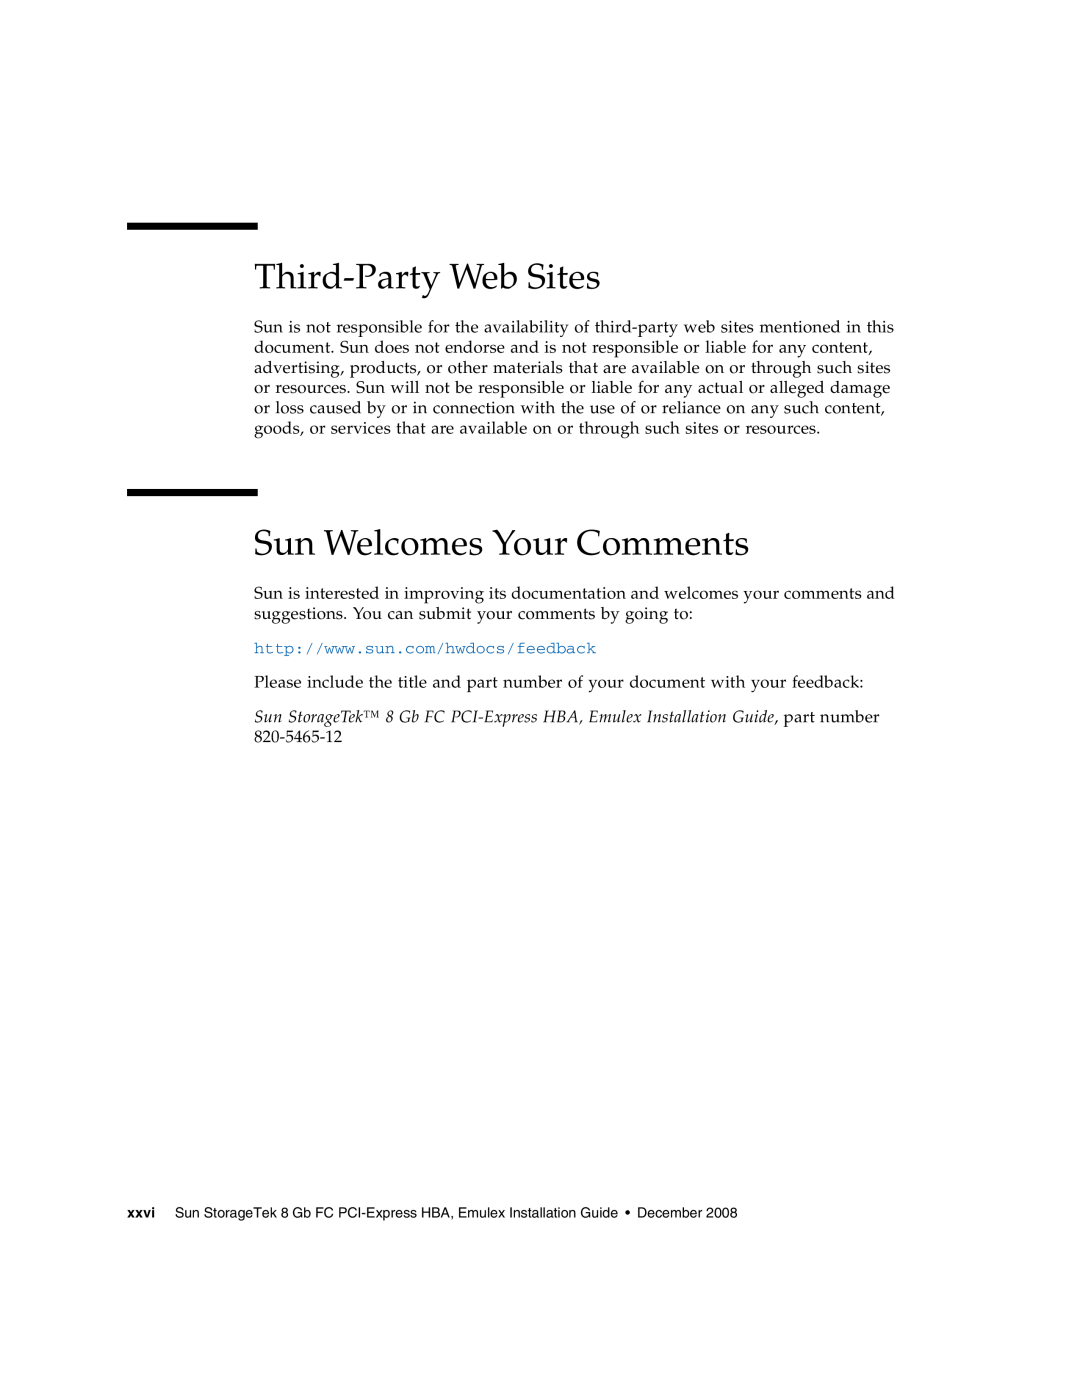 Sun Microsystems SG-XPCIE2FC-EM8-Z, SG-XPCIE1FC-EM8-Z manual Third-Party Web Sites, Sun Welcomes Your Comments 